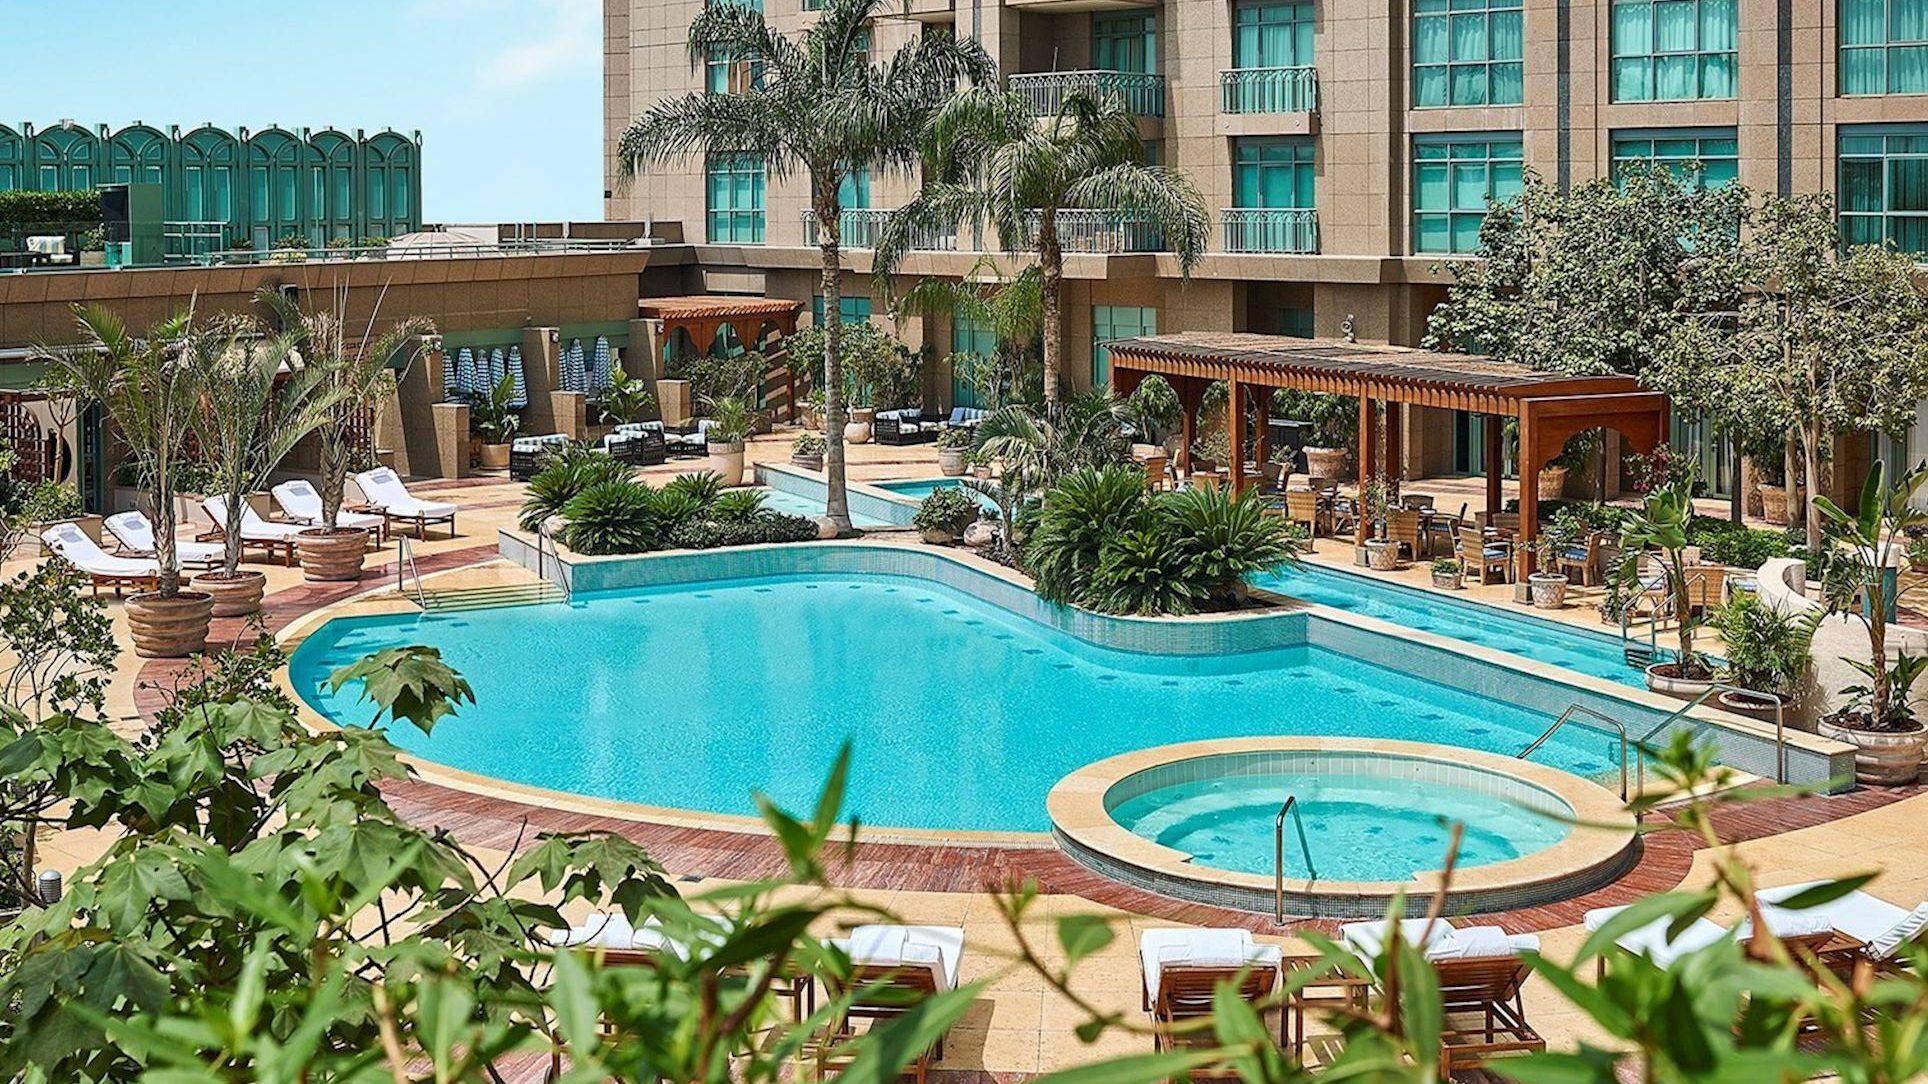 Four Seasons Hotel Cairo at Nile Plaza: этот отель с пятью звездами находится в центре города и имеет вид на Нил. Он имеет спа-центр, бассейн и отличное обслуживание.